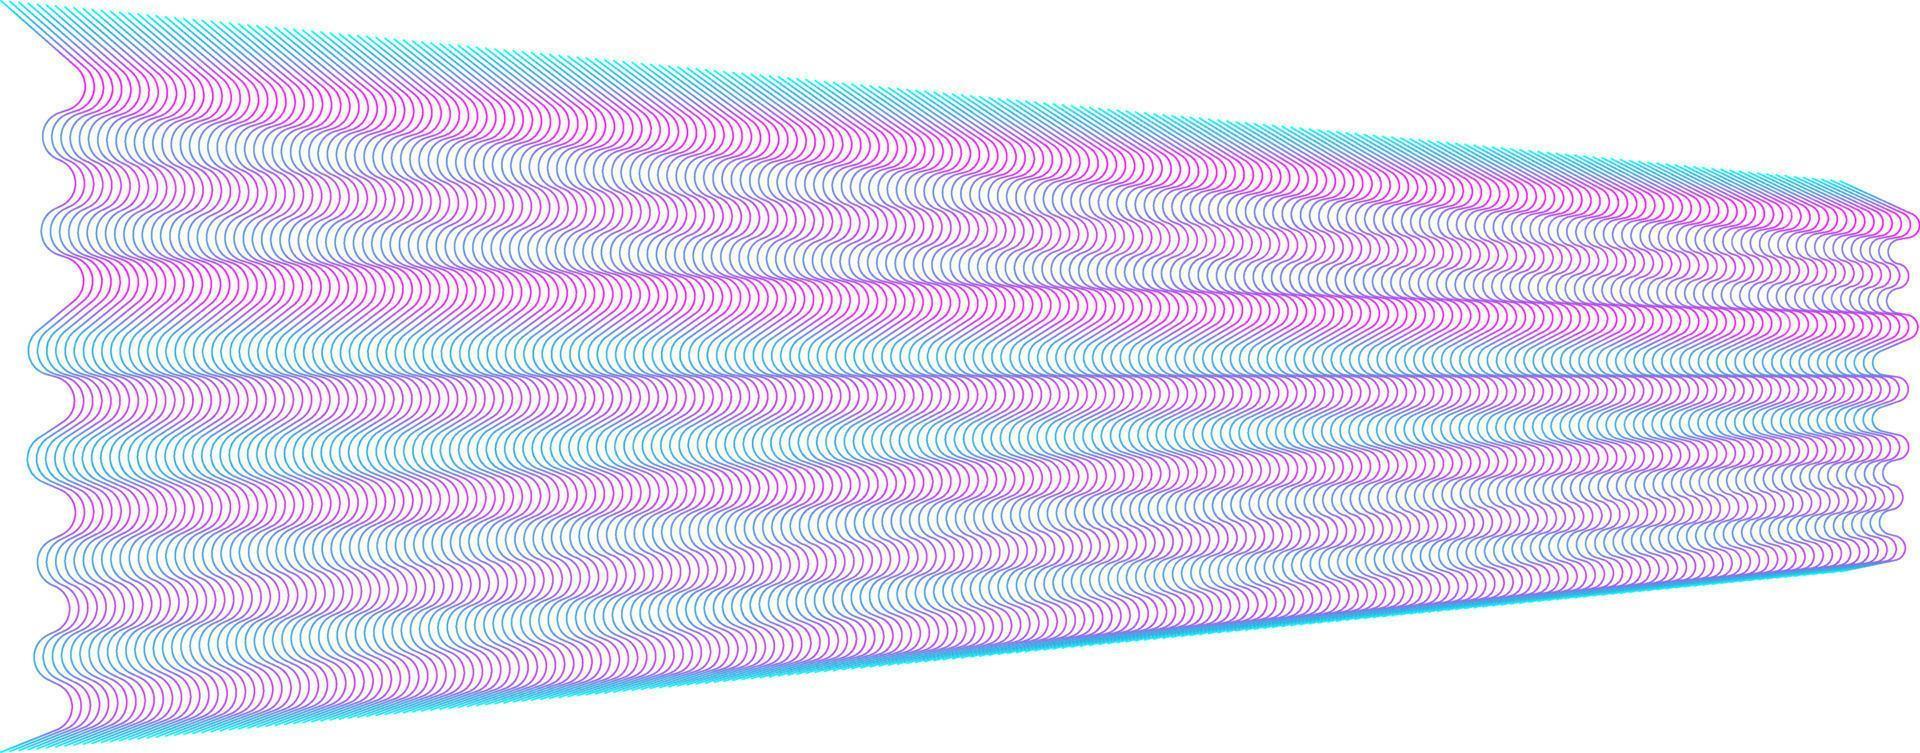 vagues abstraites ligne graphique sonique ou image vectorielle d'onde sonore vecteur